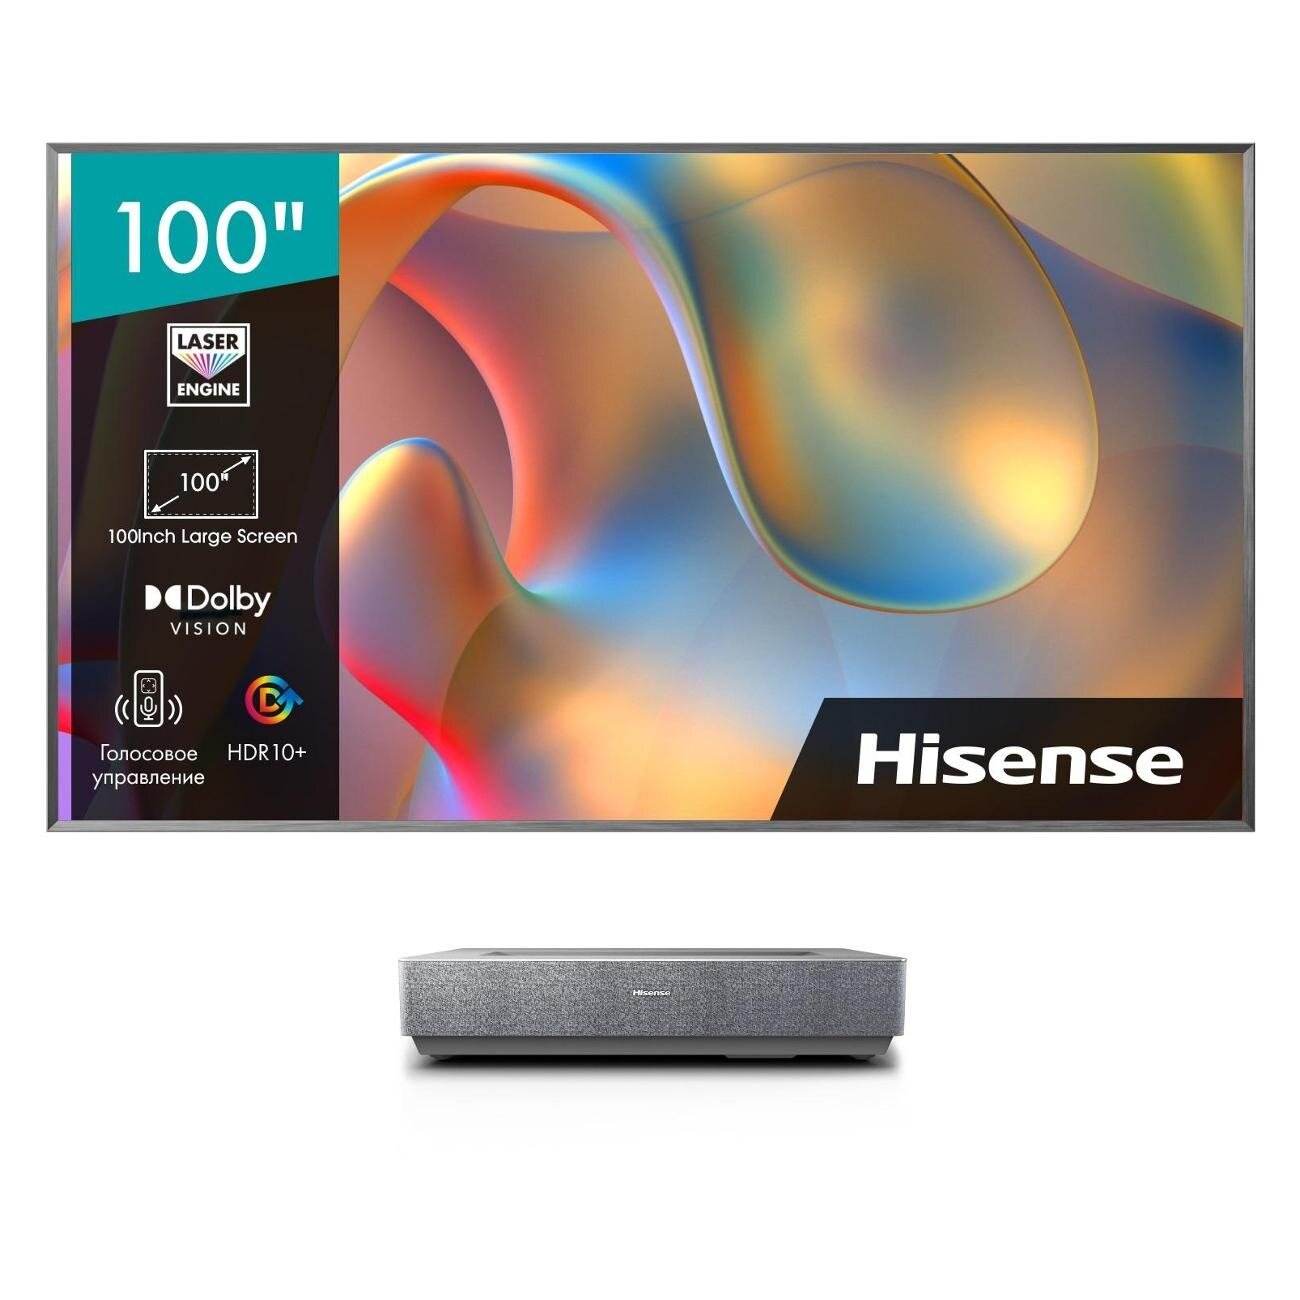 Телевизор LED Hisense 100" Laser TV 100L5H черный 4K Ultra HD 100Hz DVB-T DVB-T2 DVB-C DVB-S DVB-S2 WiFi Smart TV